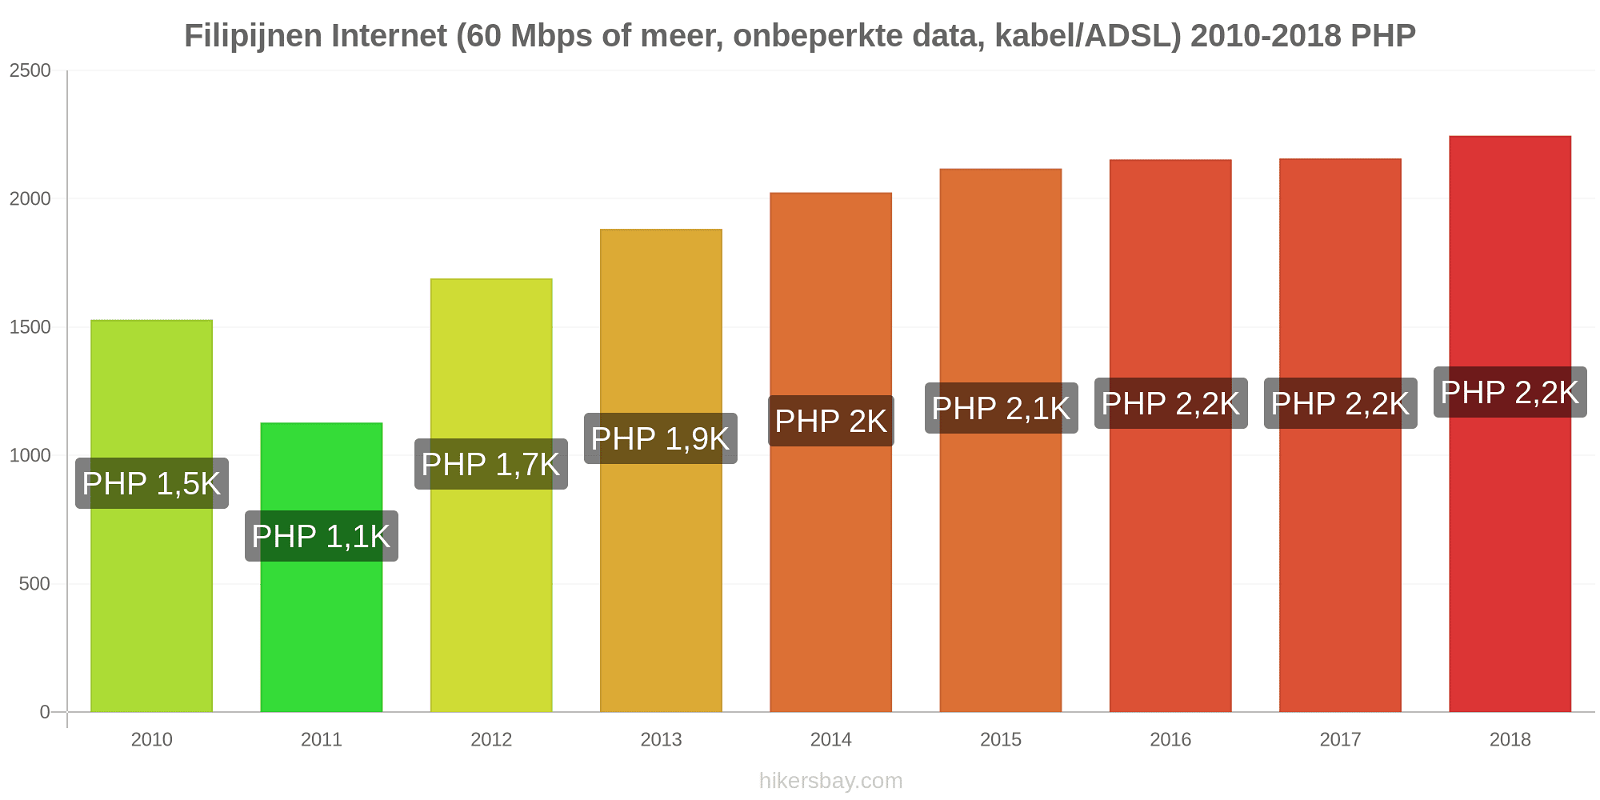 Filipijnen prijswijzigingen Internet (60 Mbps of meer, Onbeperkte Data, Kabel/ADSL) hikersbay.com